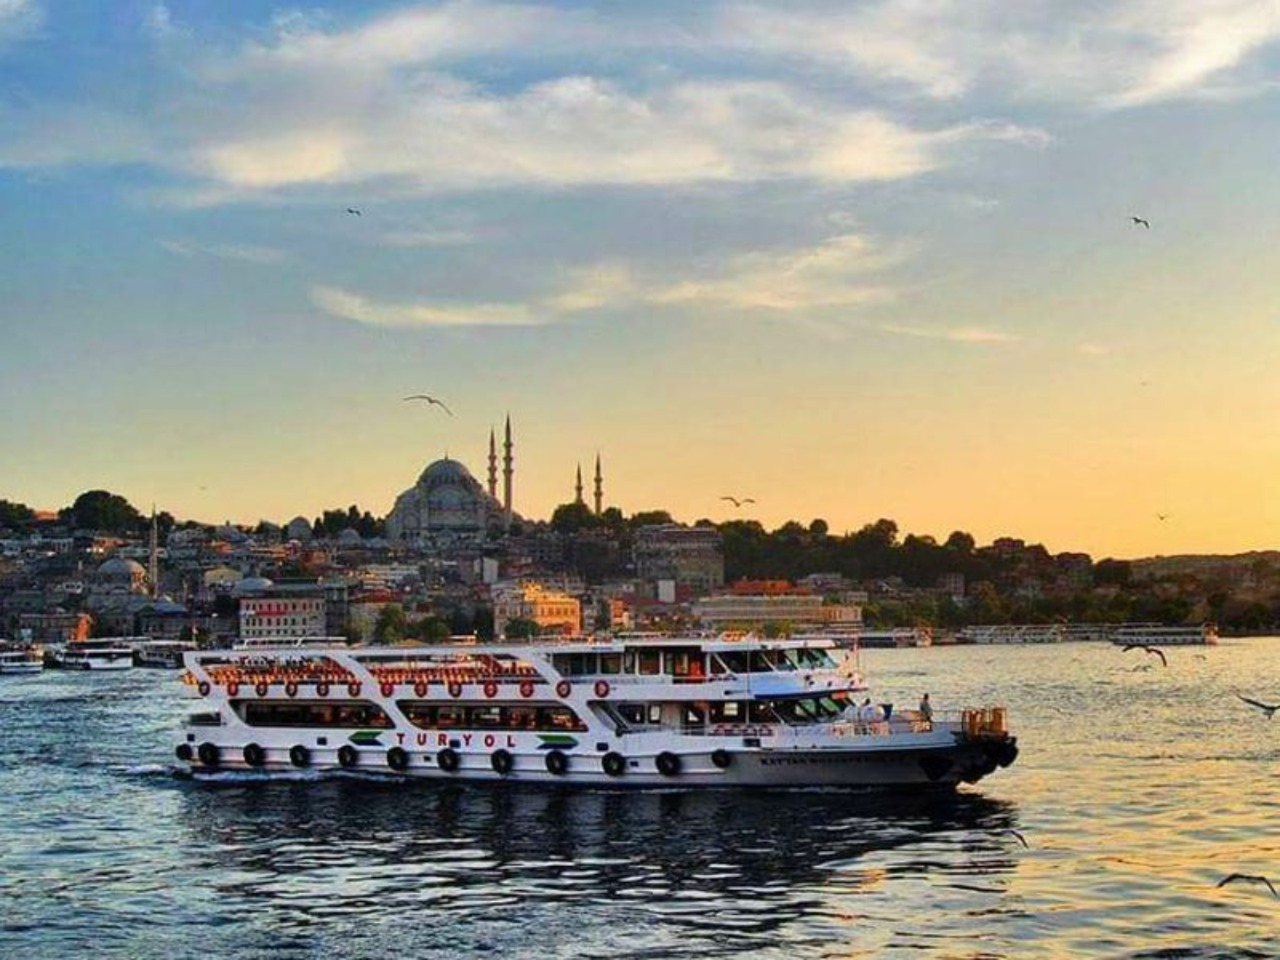 Стамбул изнутри | Цена 250€, отзывы, описание экскурсии